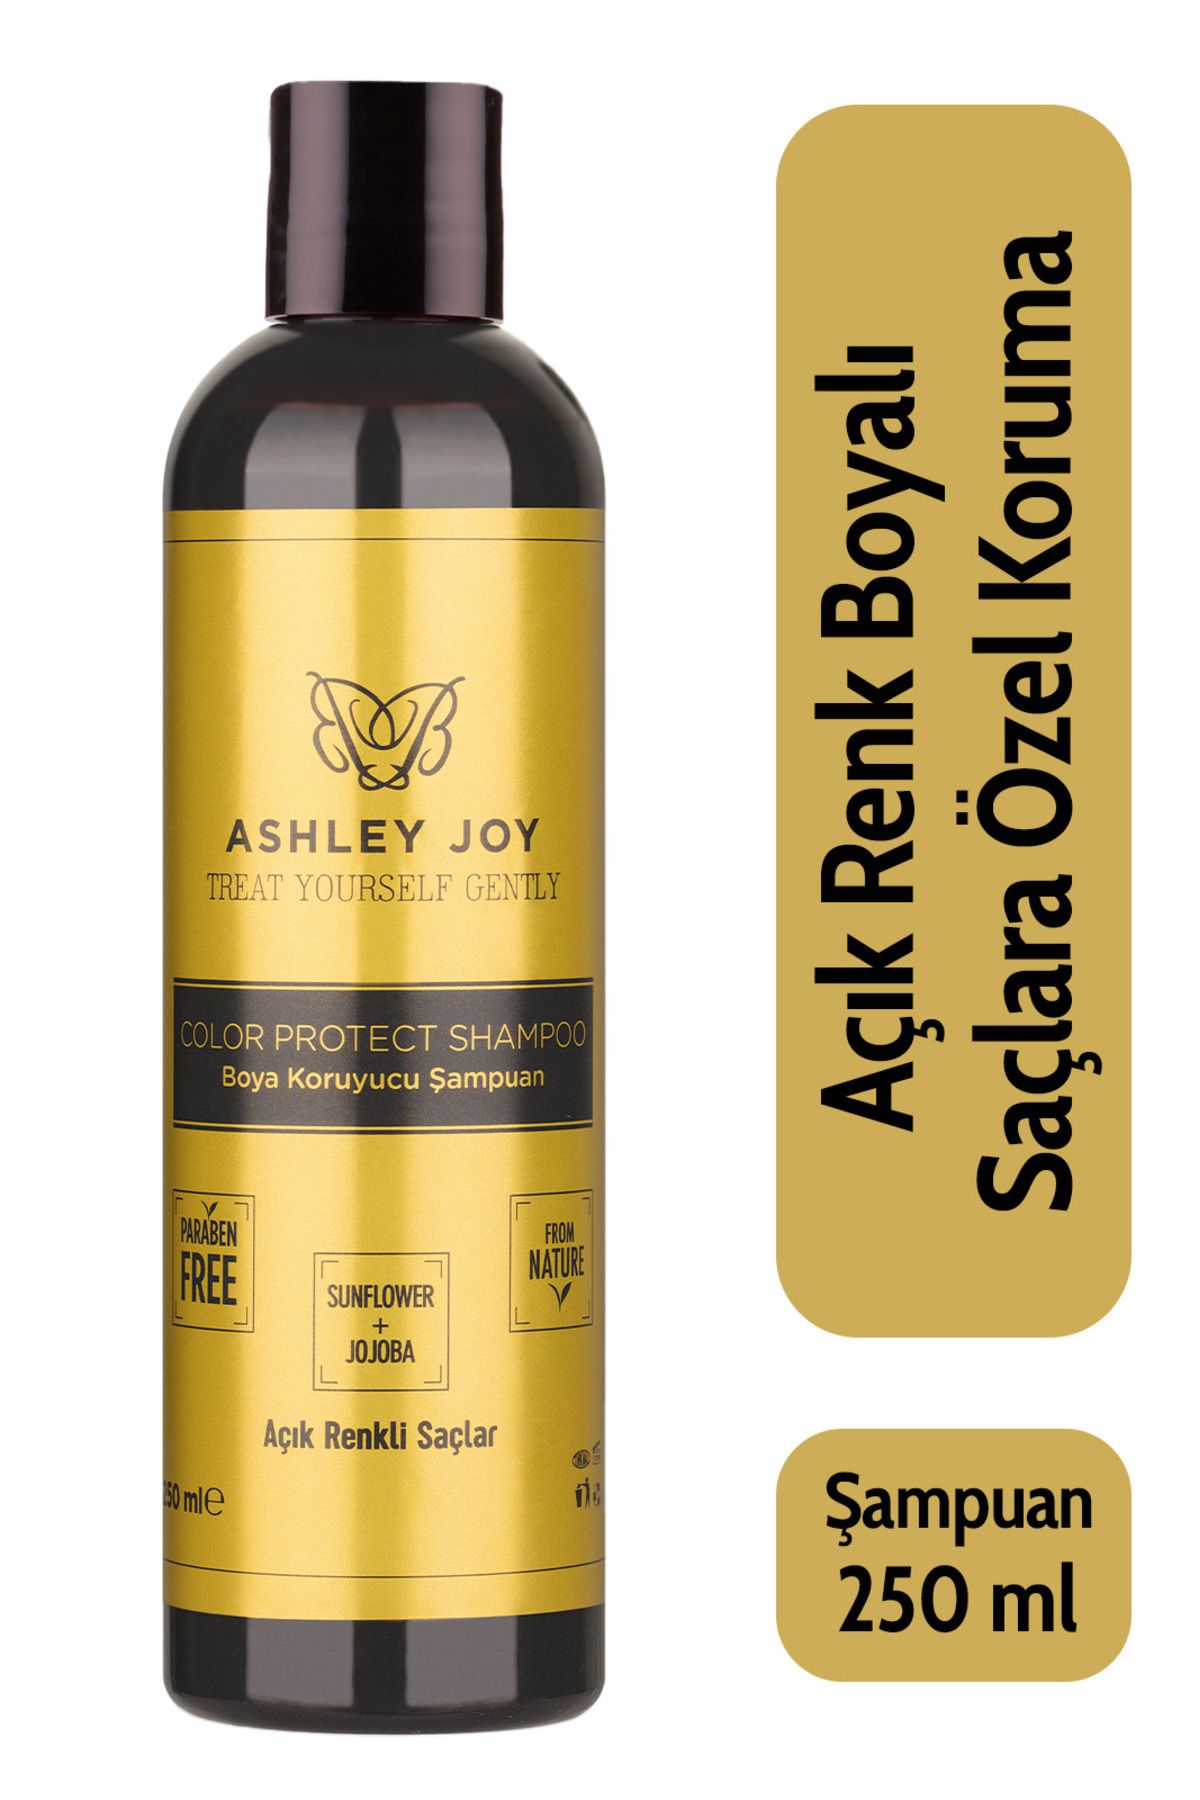 Ashley Joy Açık Renk Boyalı Saçlara Özel Jojoba Ve Badem Yağı Içeren Renk Koruyucu Şampuan 250 ml